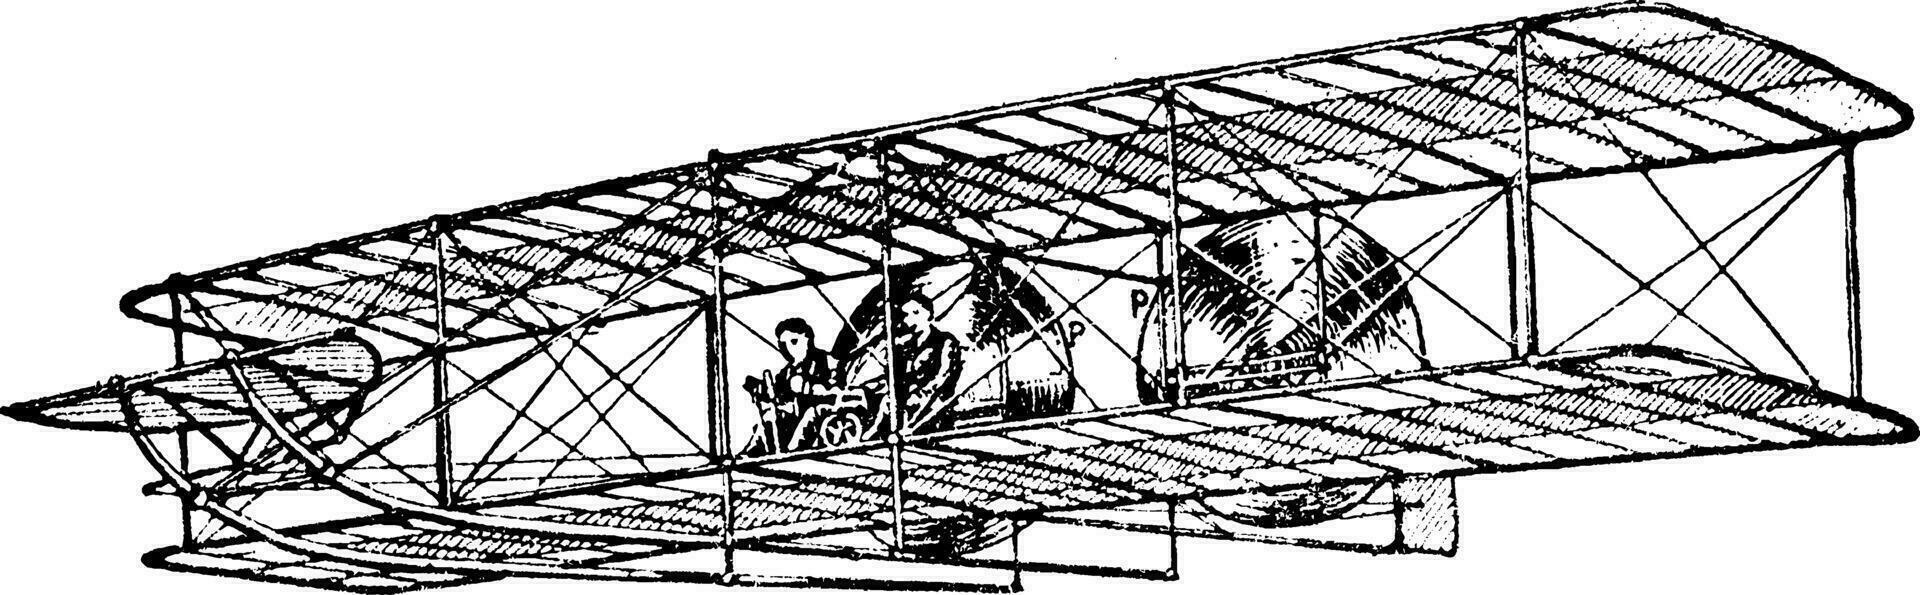 Wright irmãos avião, vintage ilustração. vetor